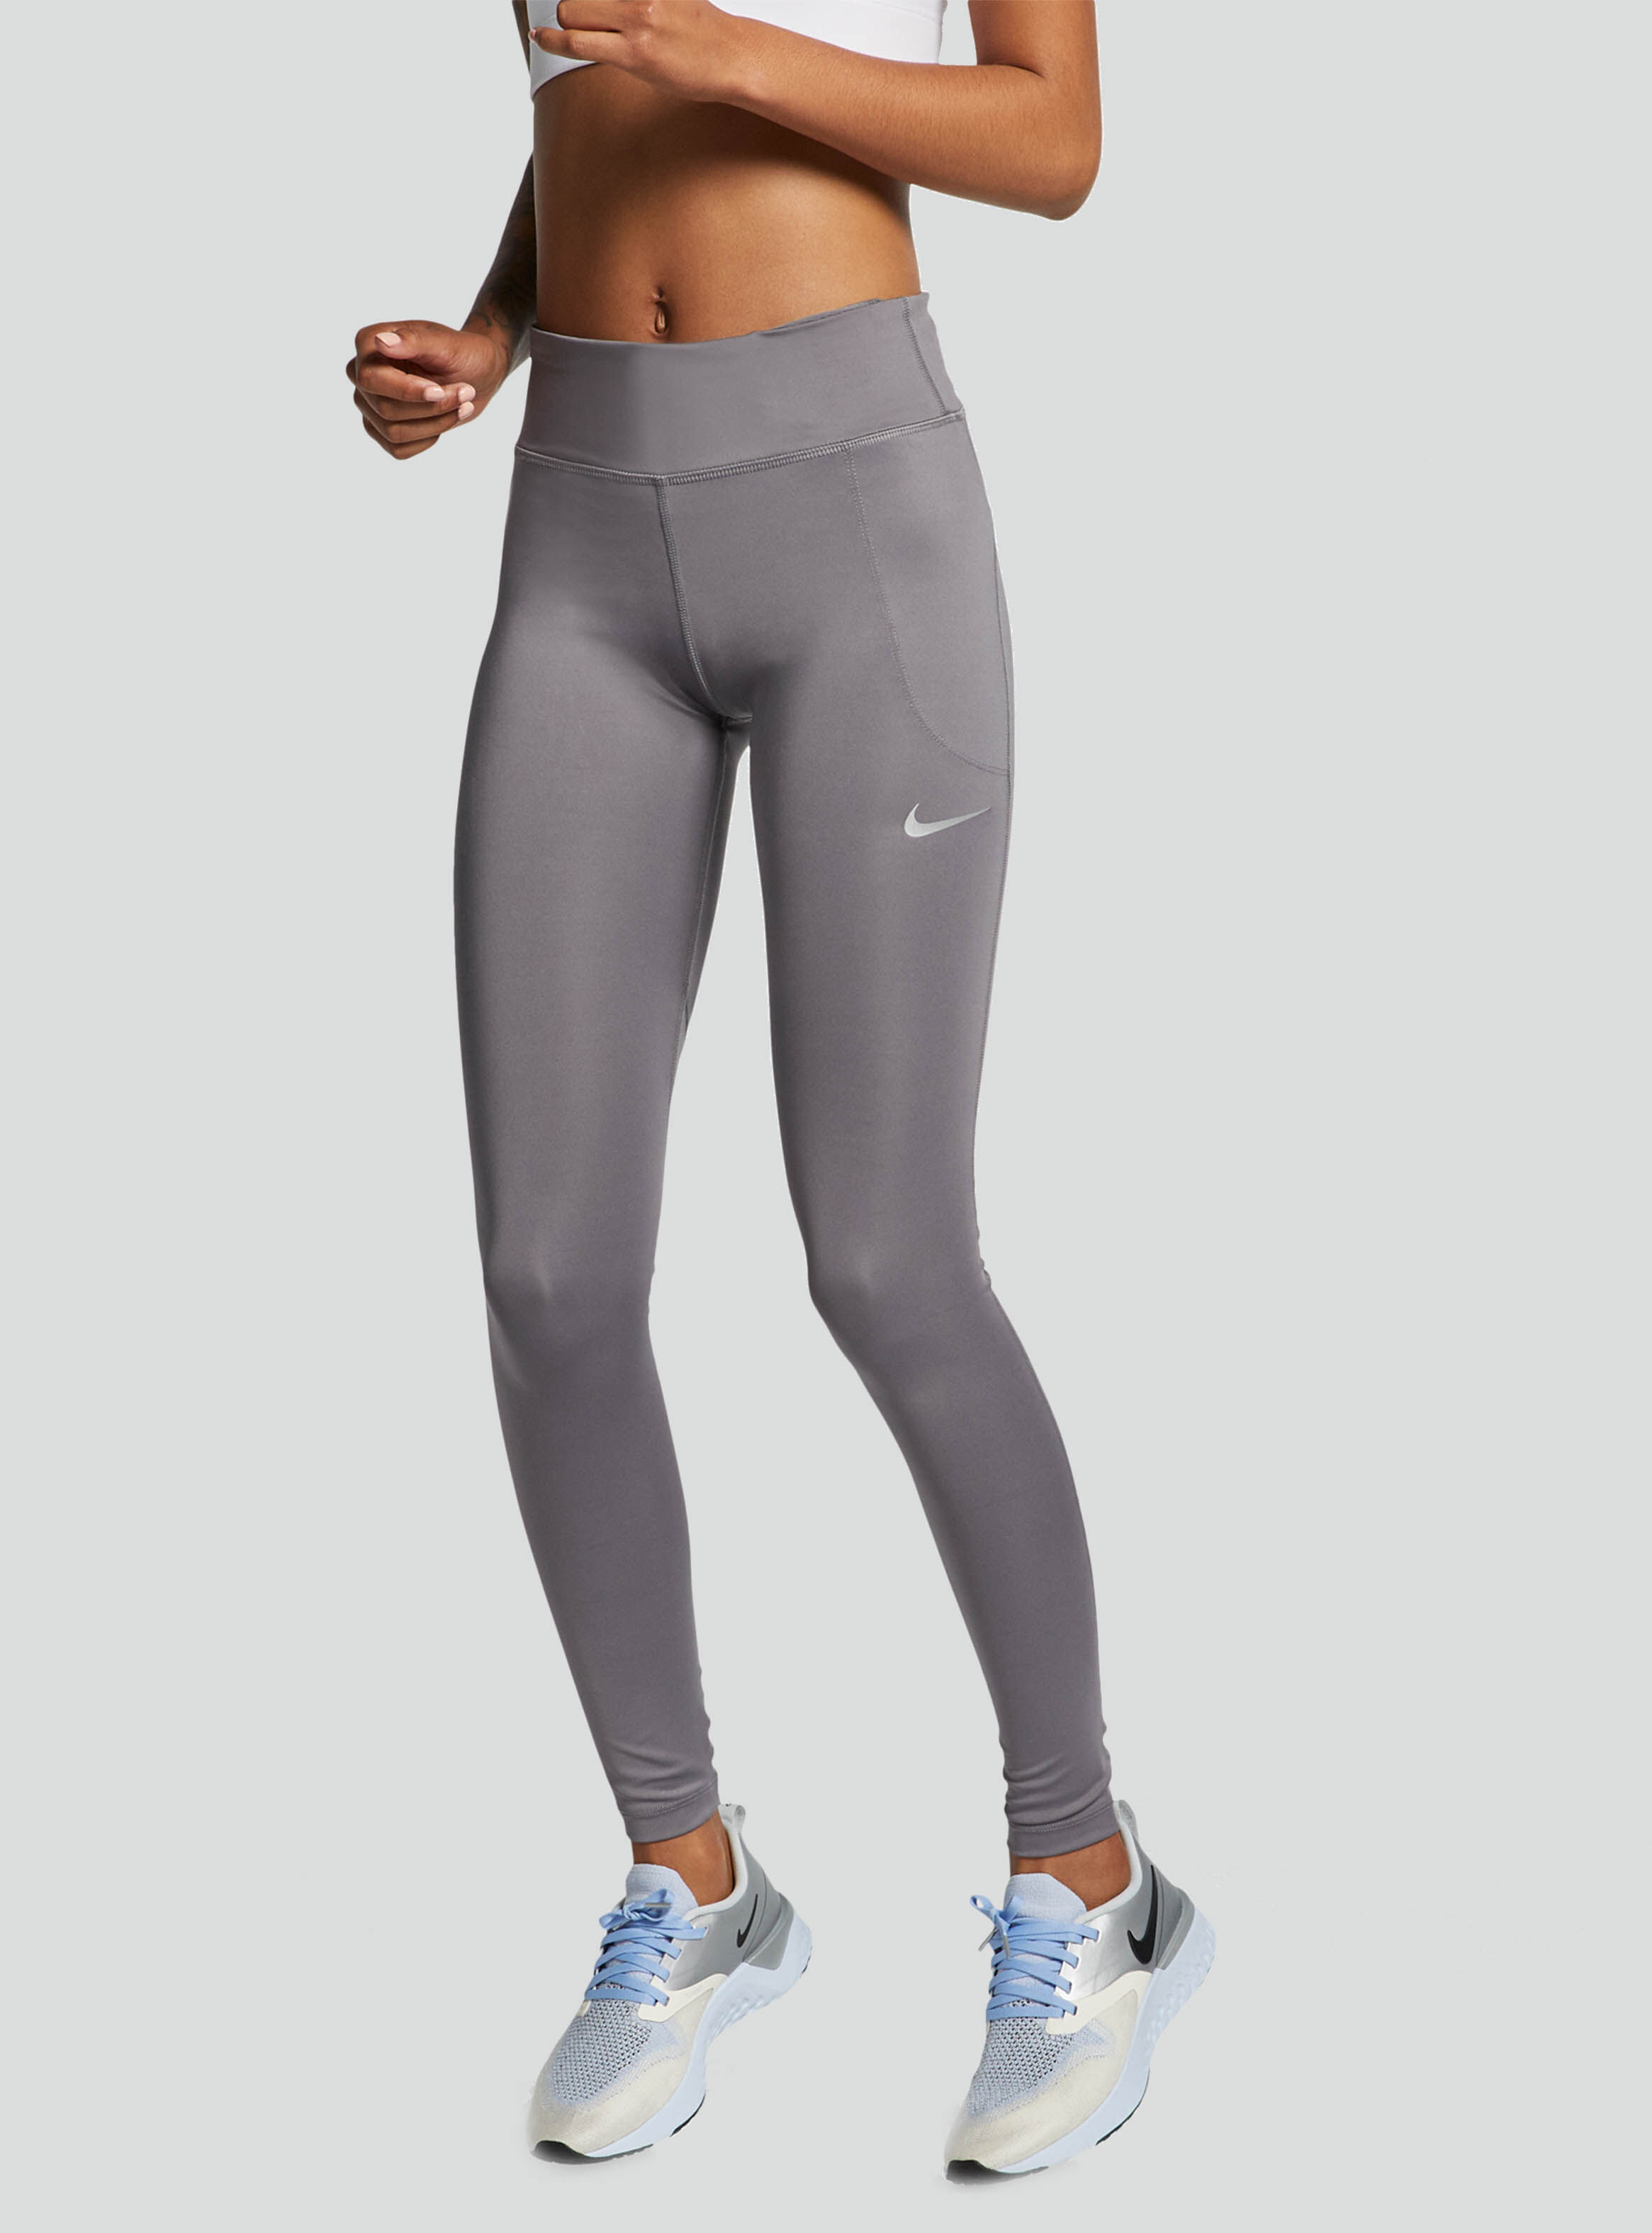 Calza Nike Running Tights Mujer - Calzas y Pantalones | Paris.cl